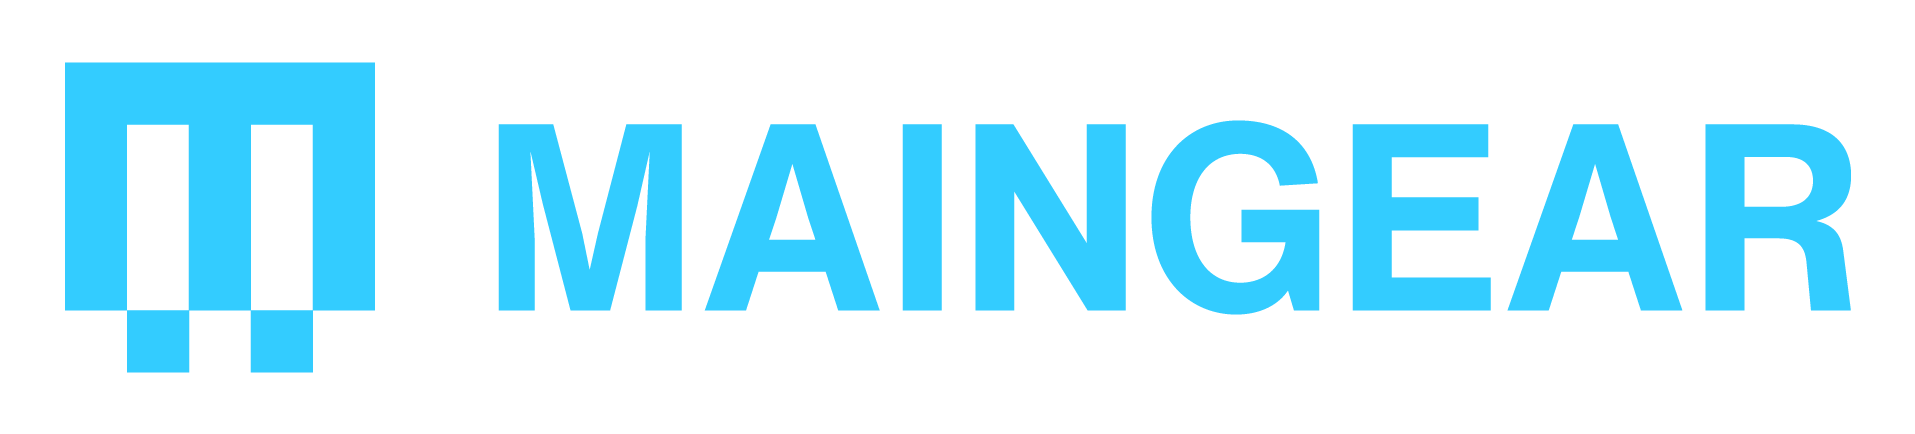 MAINGEAR logo